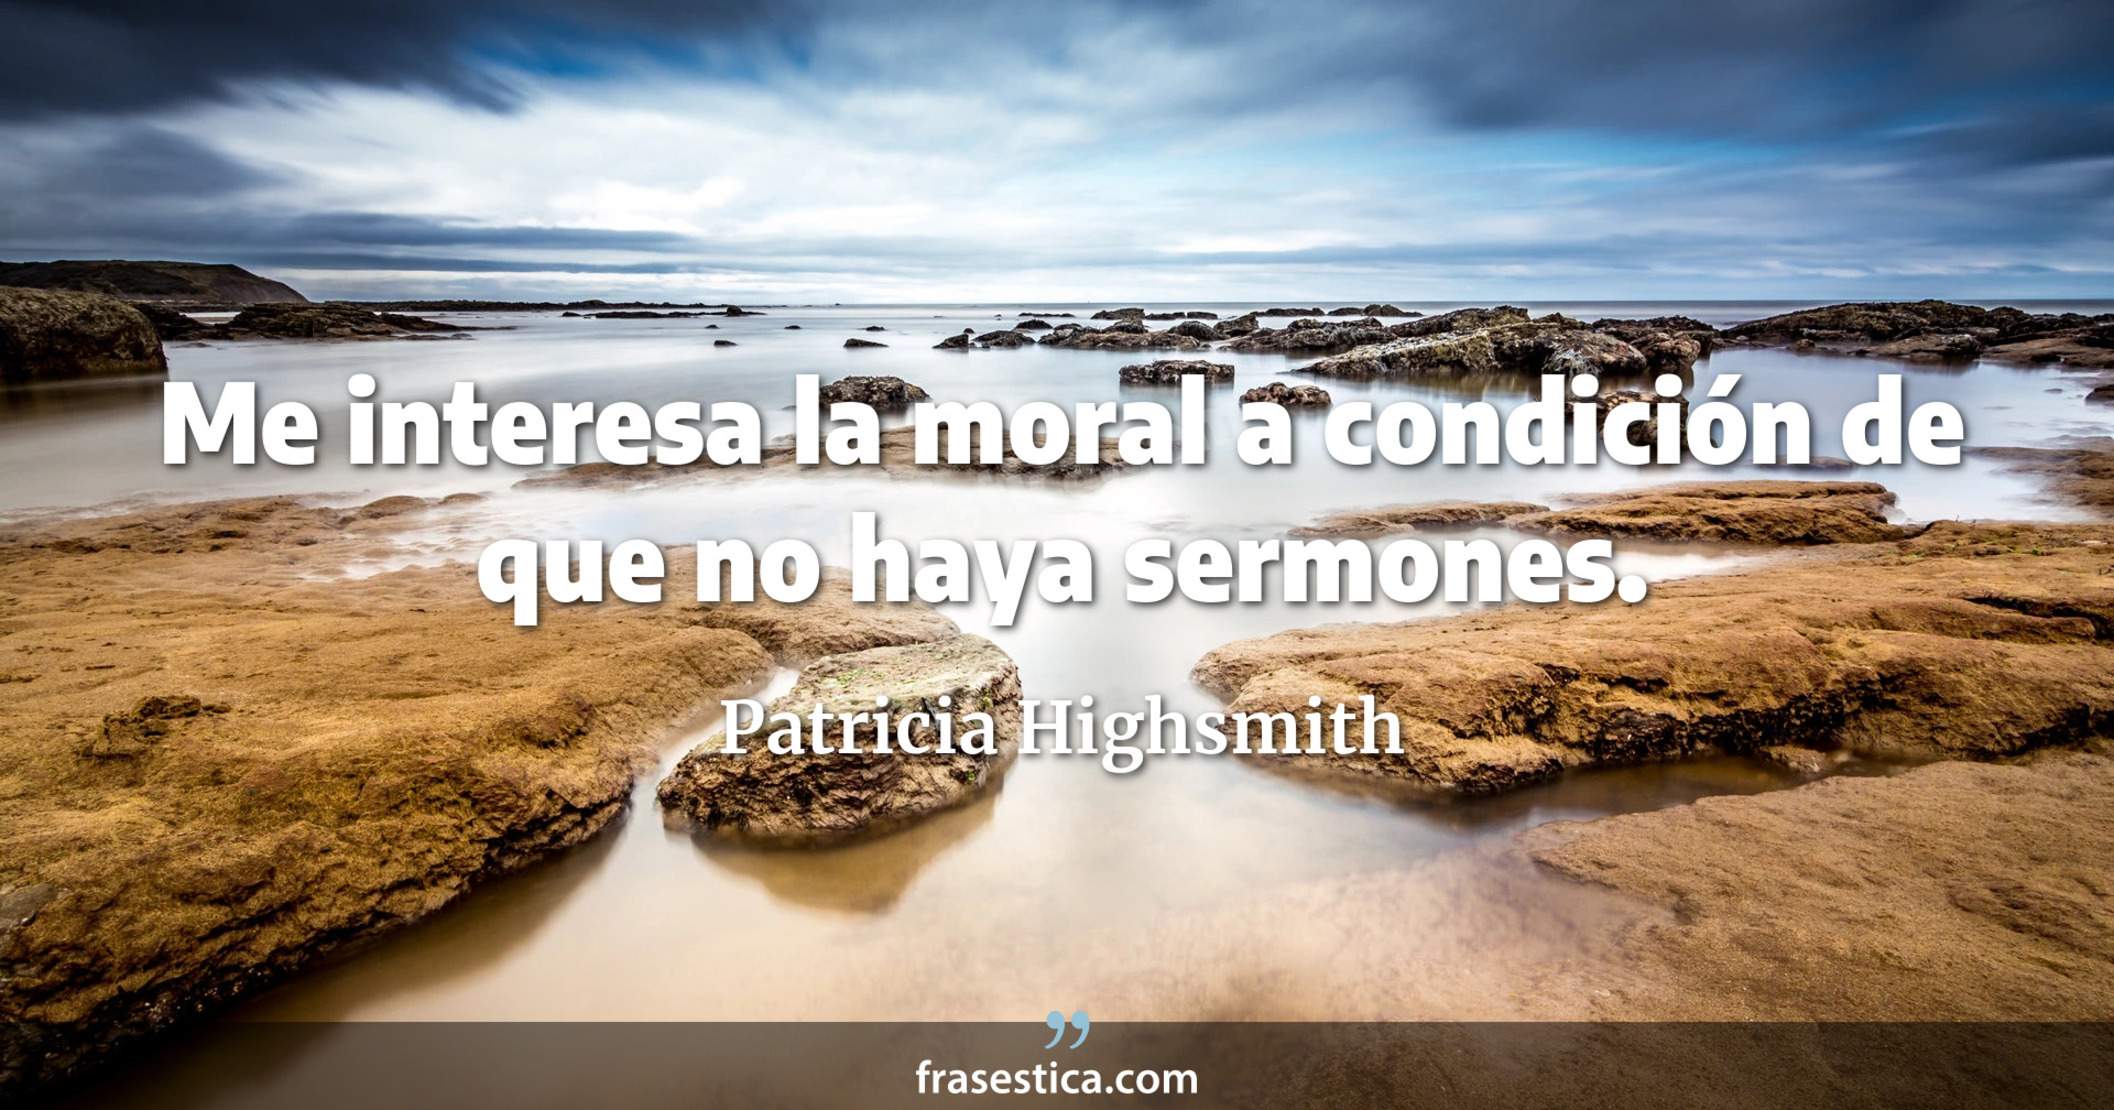 Me interesa la moral a condición de que no haya sermones. - Patricia Highsmith